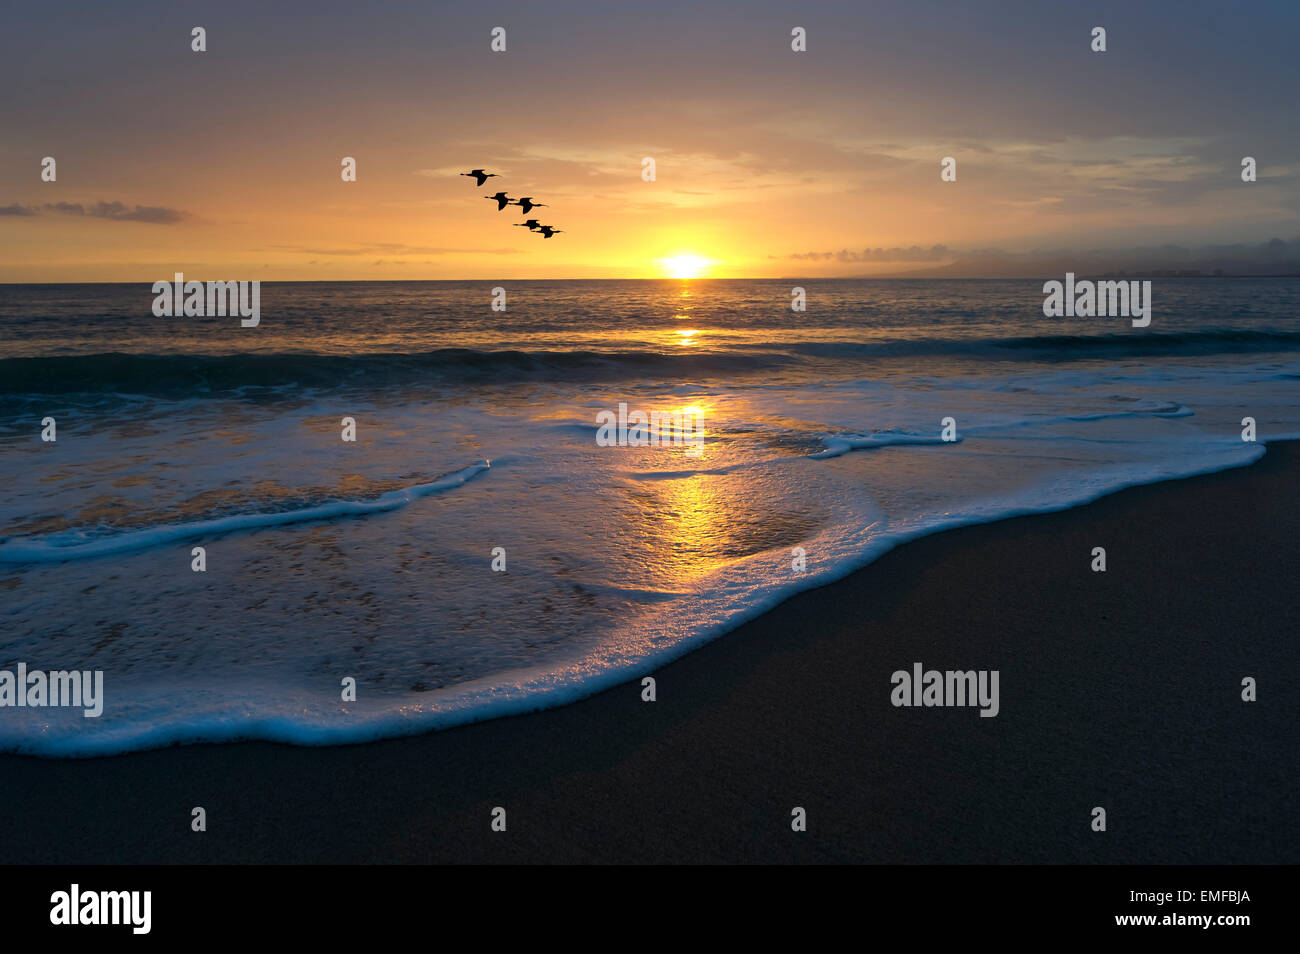 Les oiseaux dans le ciel comme l'eau de mer à la plage des rouleaux avec le coucher du soleil au-delà. Banque D'Images